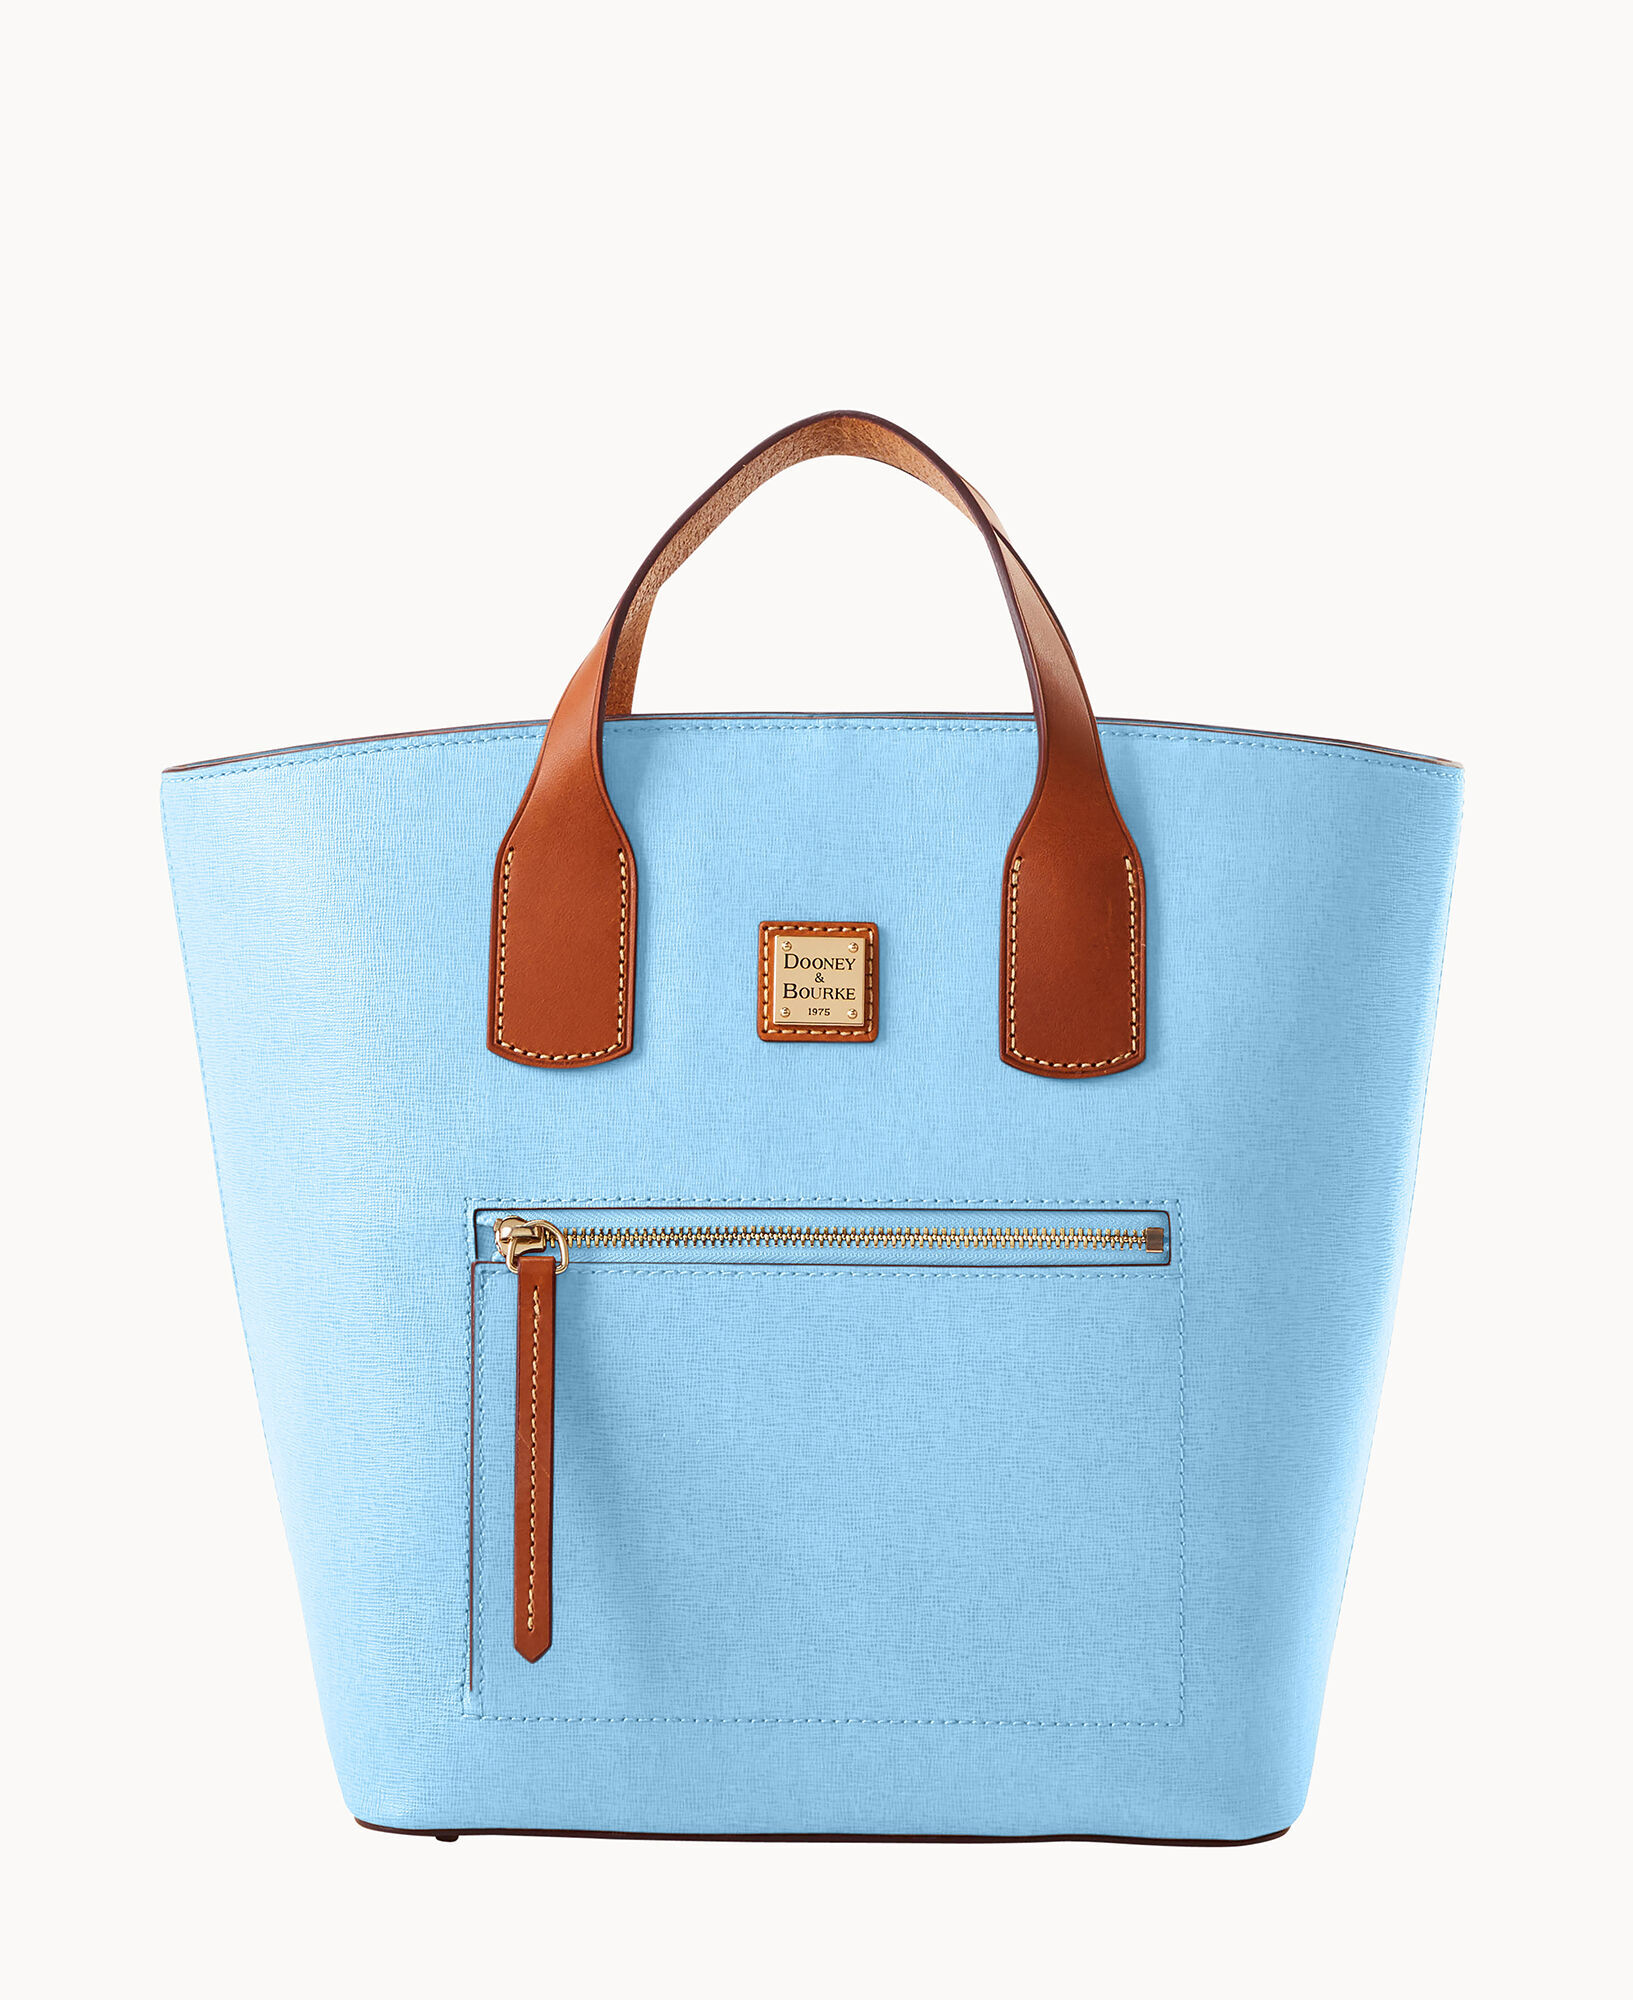 Dooney & Bourke Saffiano Lexi Crossbody Shoulder Bag Purse Sky Blue